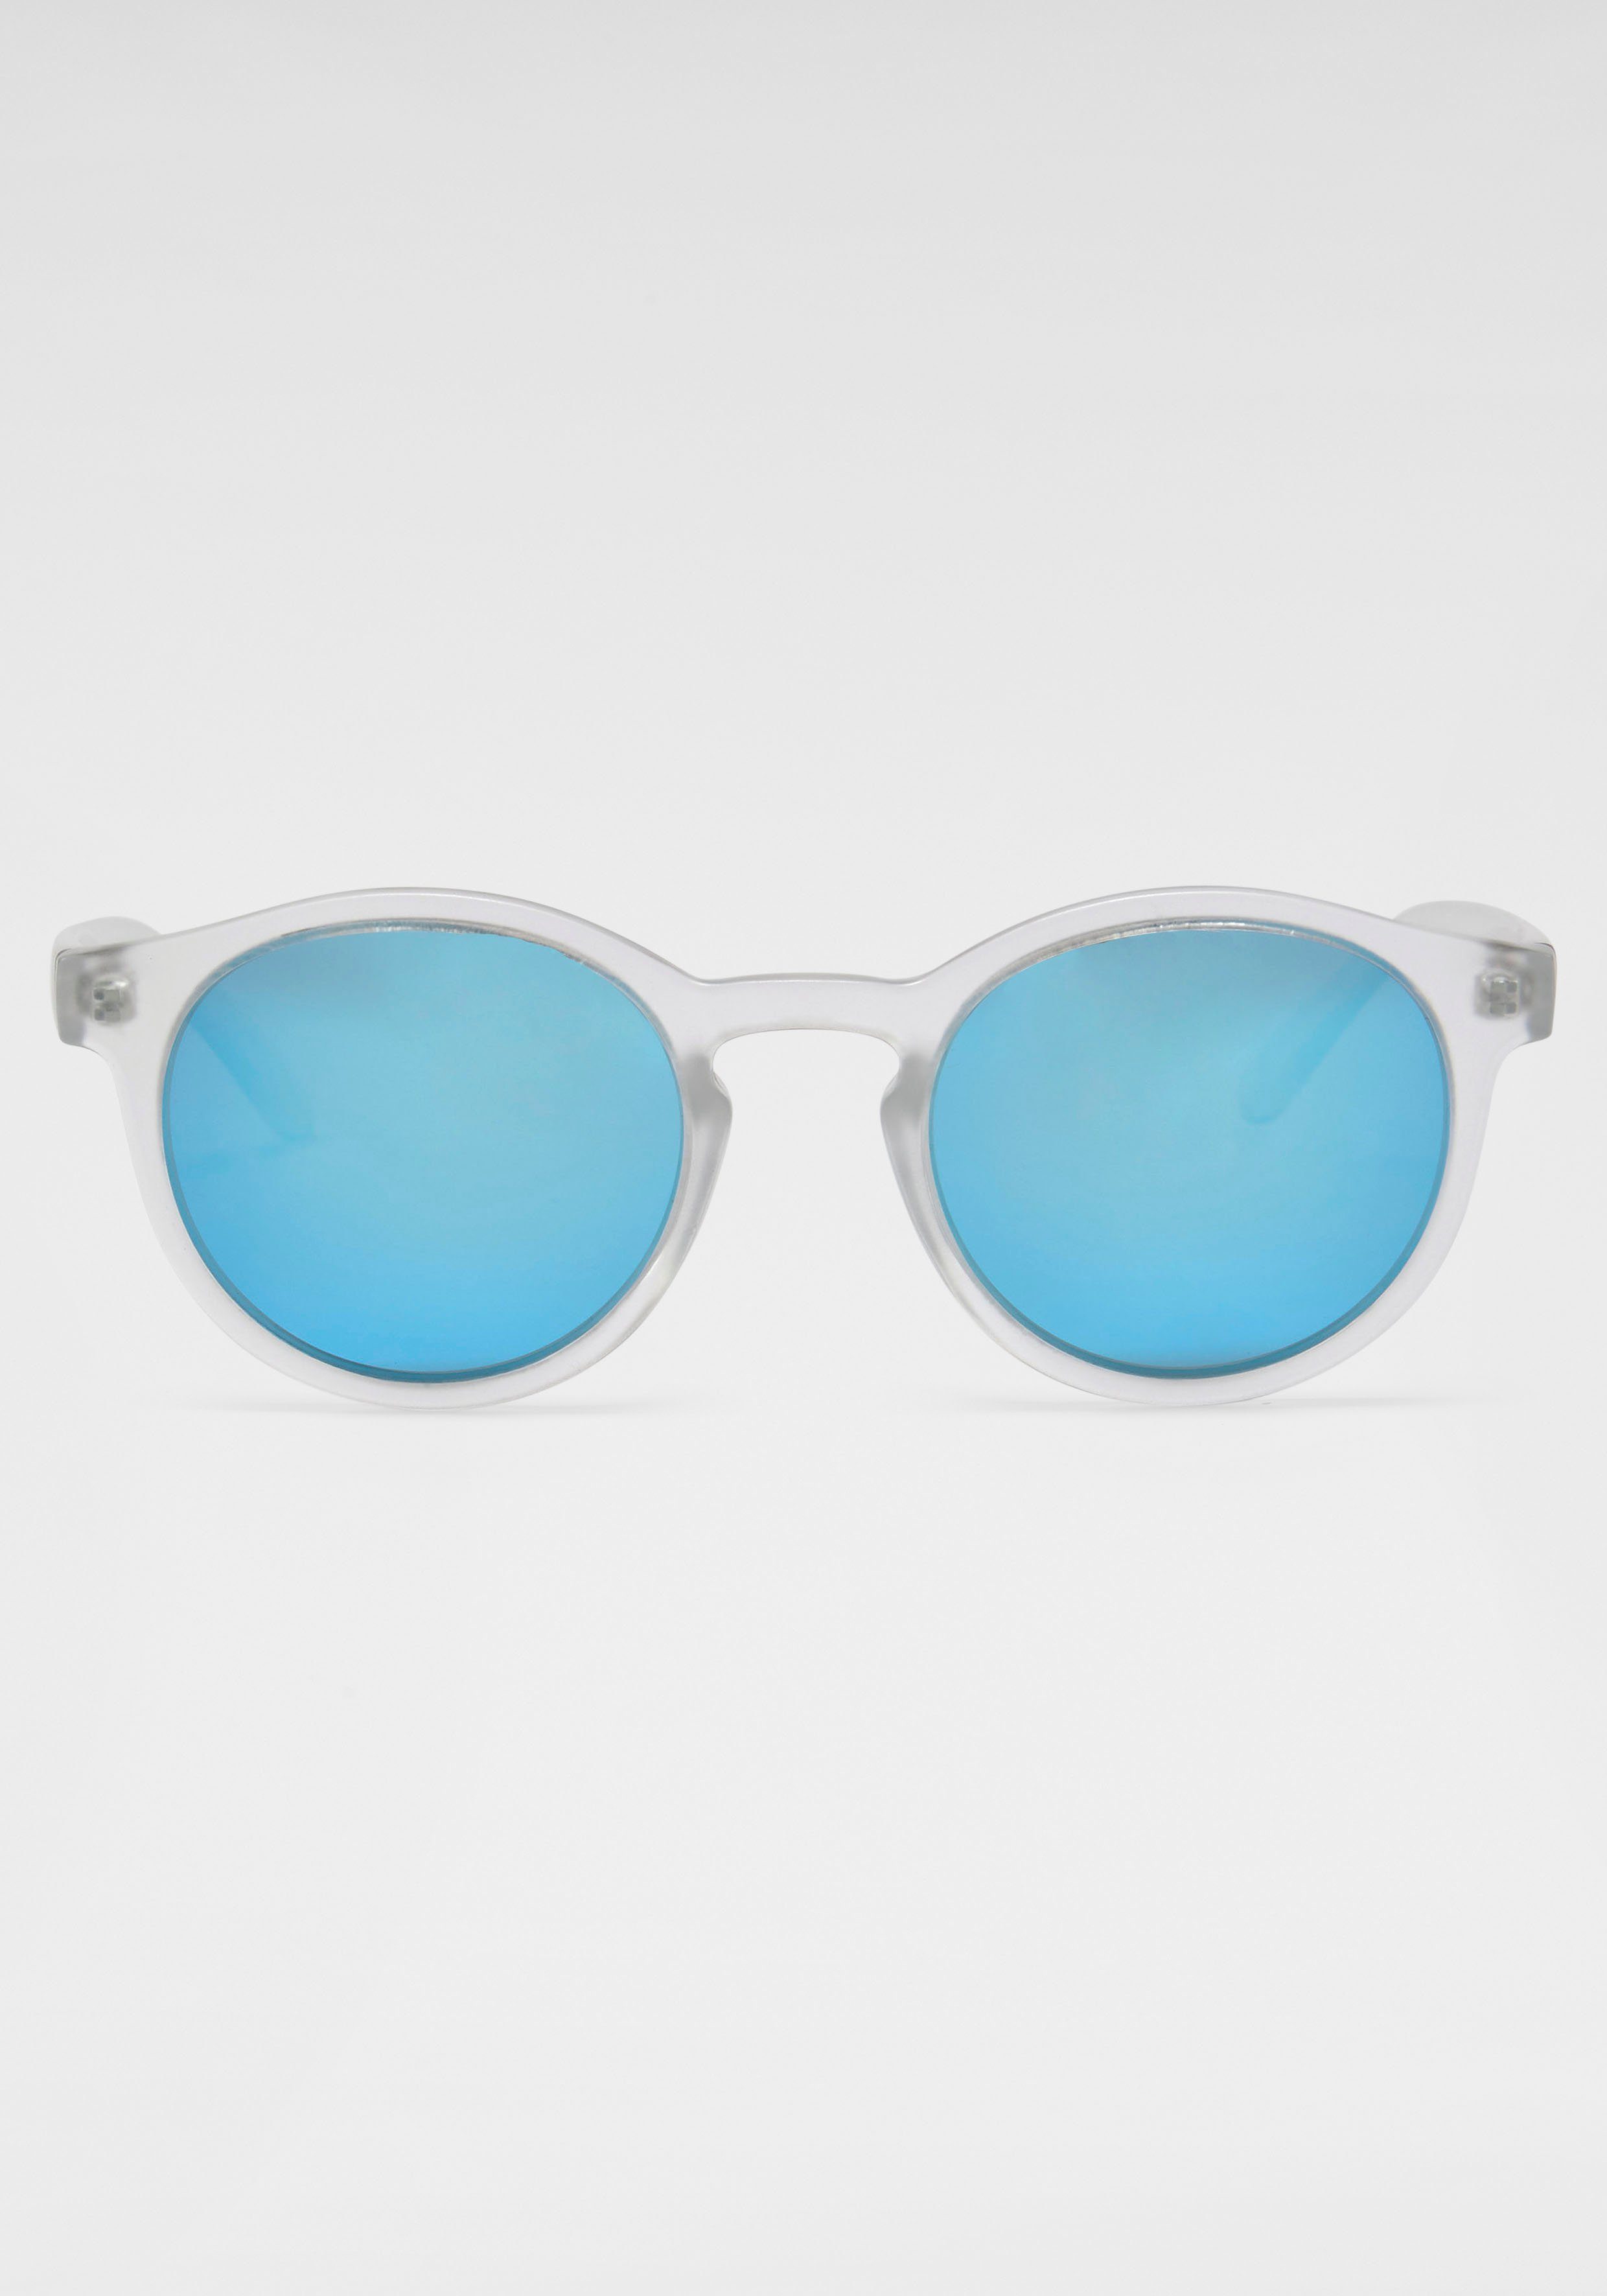 BASEFIELD Sonnenbrille, Modische Damensonnenbrille